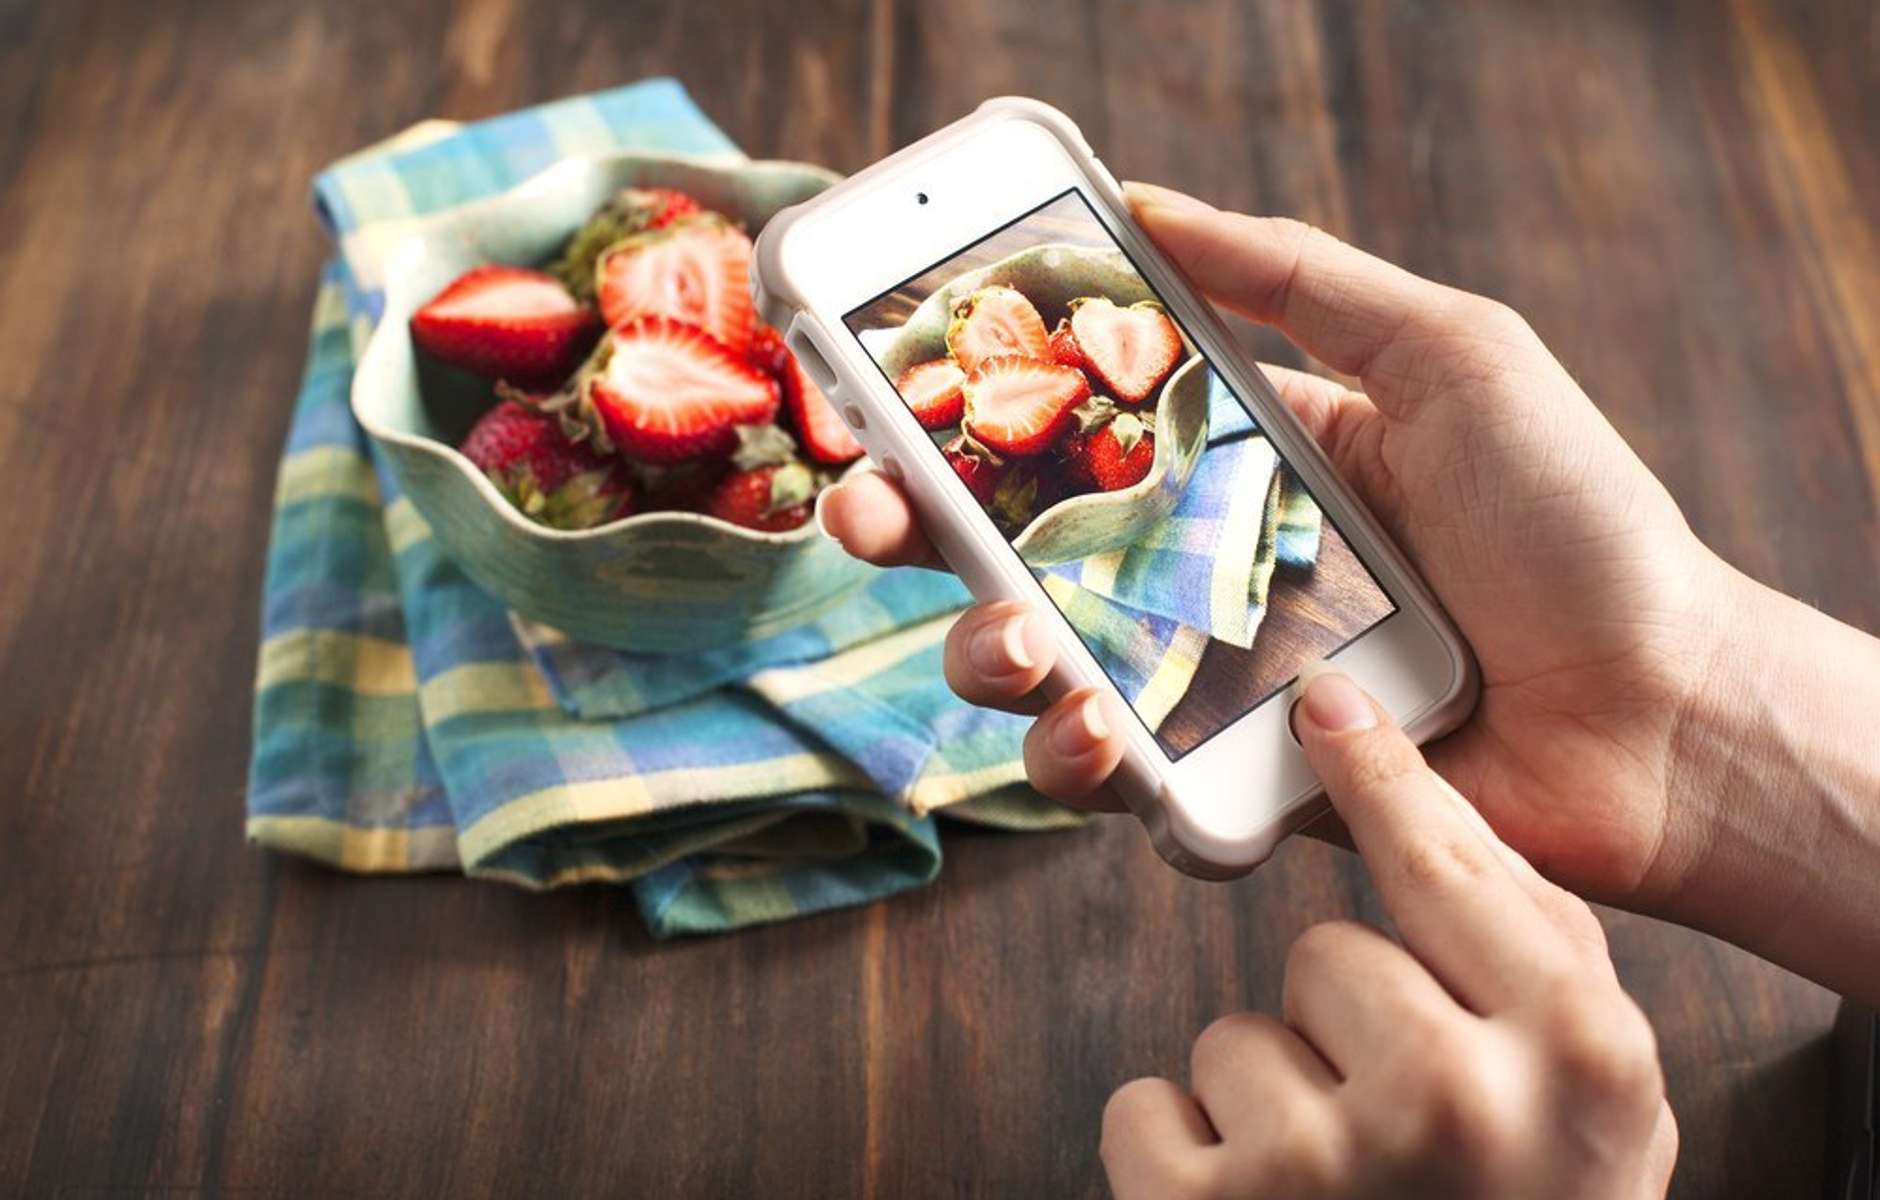 Инстаграм и еда: вкусные кулинарные блоги и красивая еда, топ-10 аккаунтов и обзор